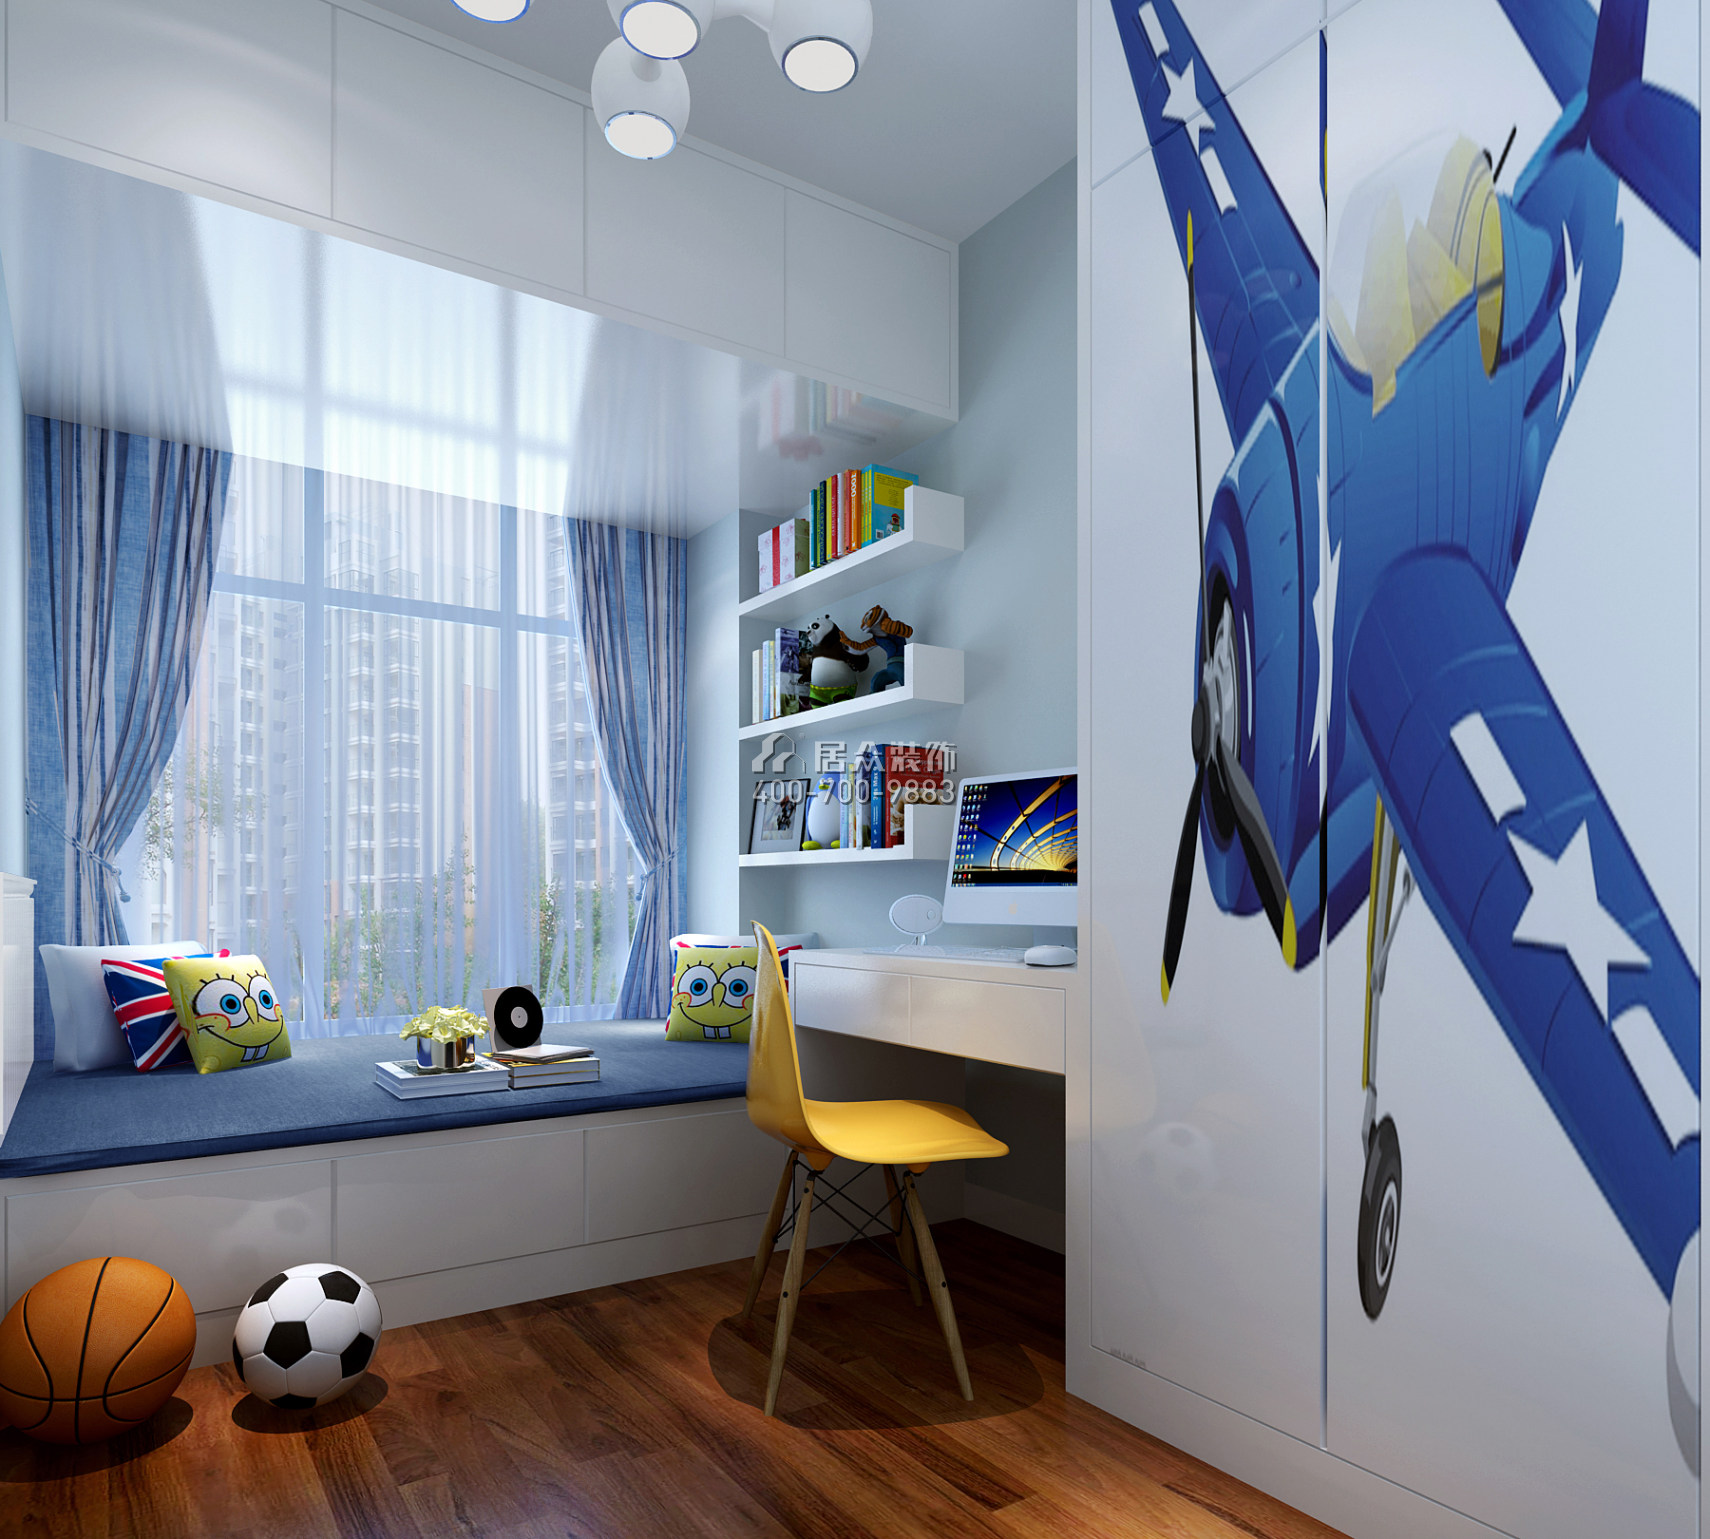 宏發世紀城二期89平方米現代簡約風格平層戶型兒童房裝修效果圖